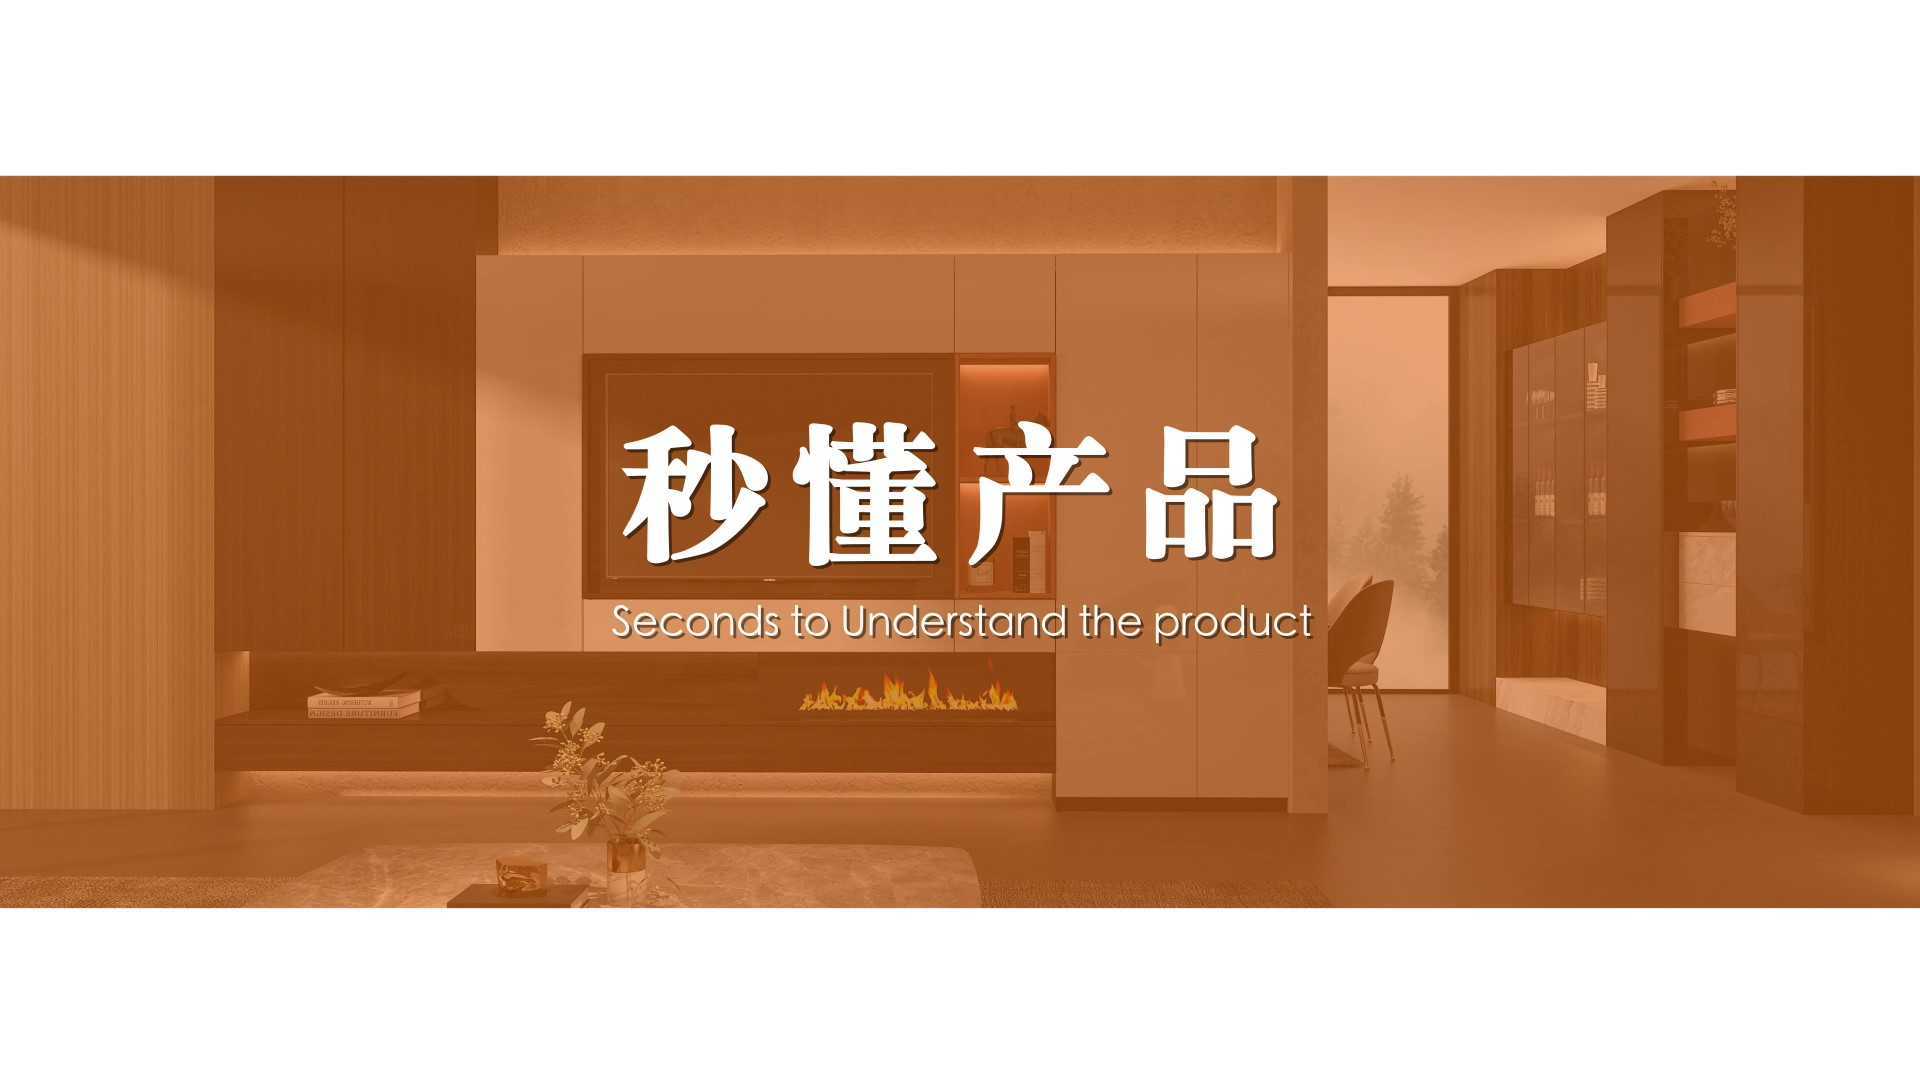 福庆家居 秒懂产品丨杭州宣传片拍摄制作 - 拍好片